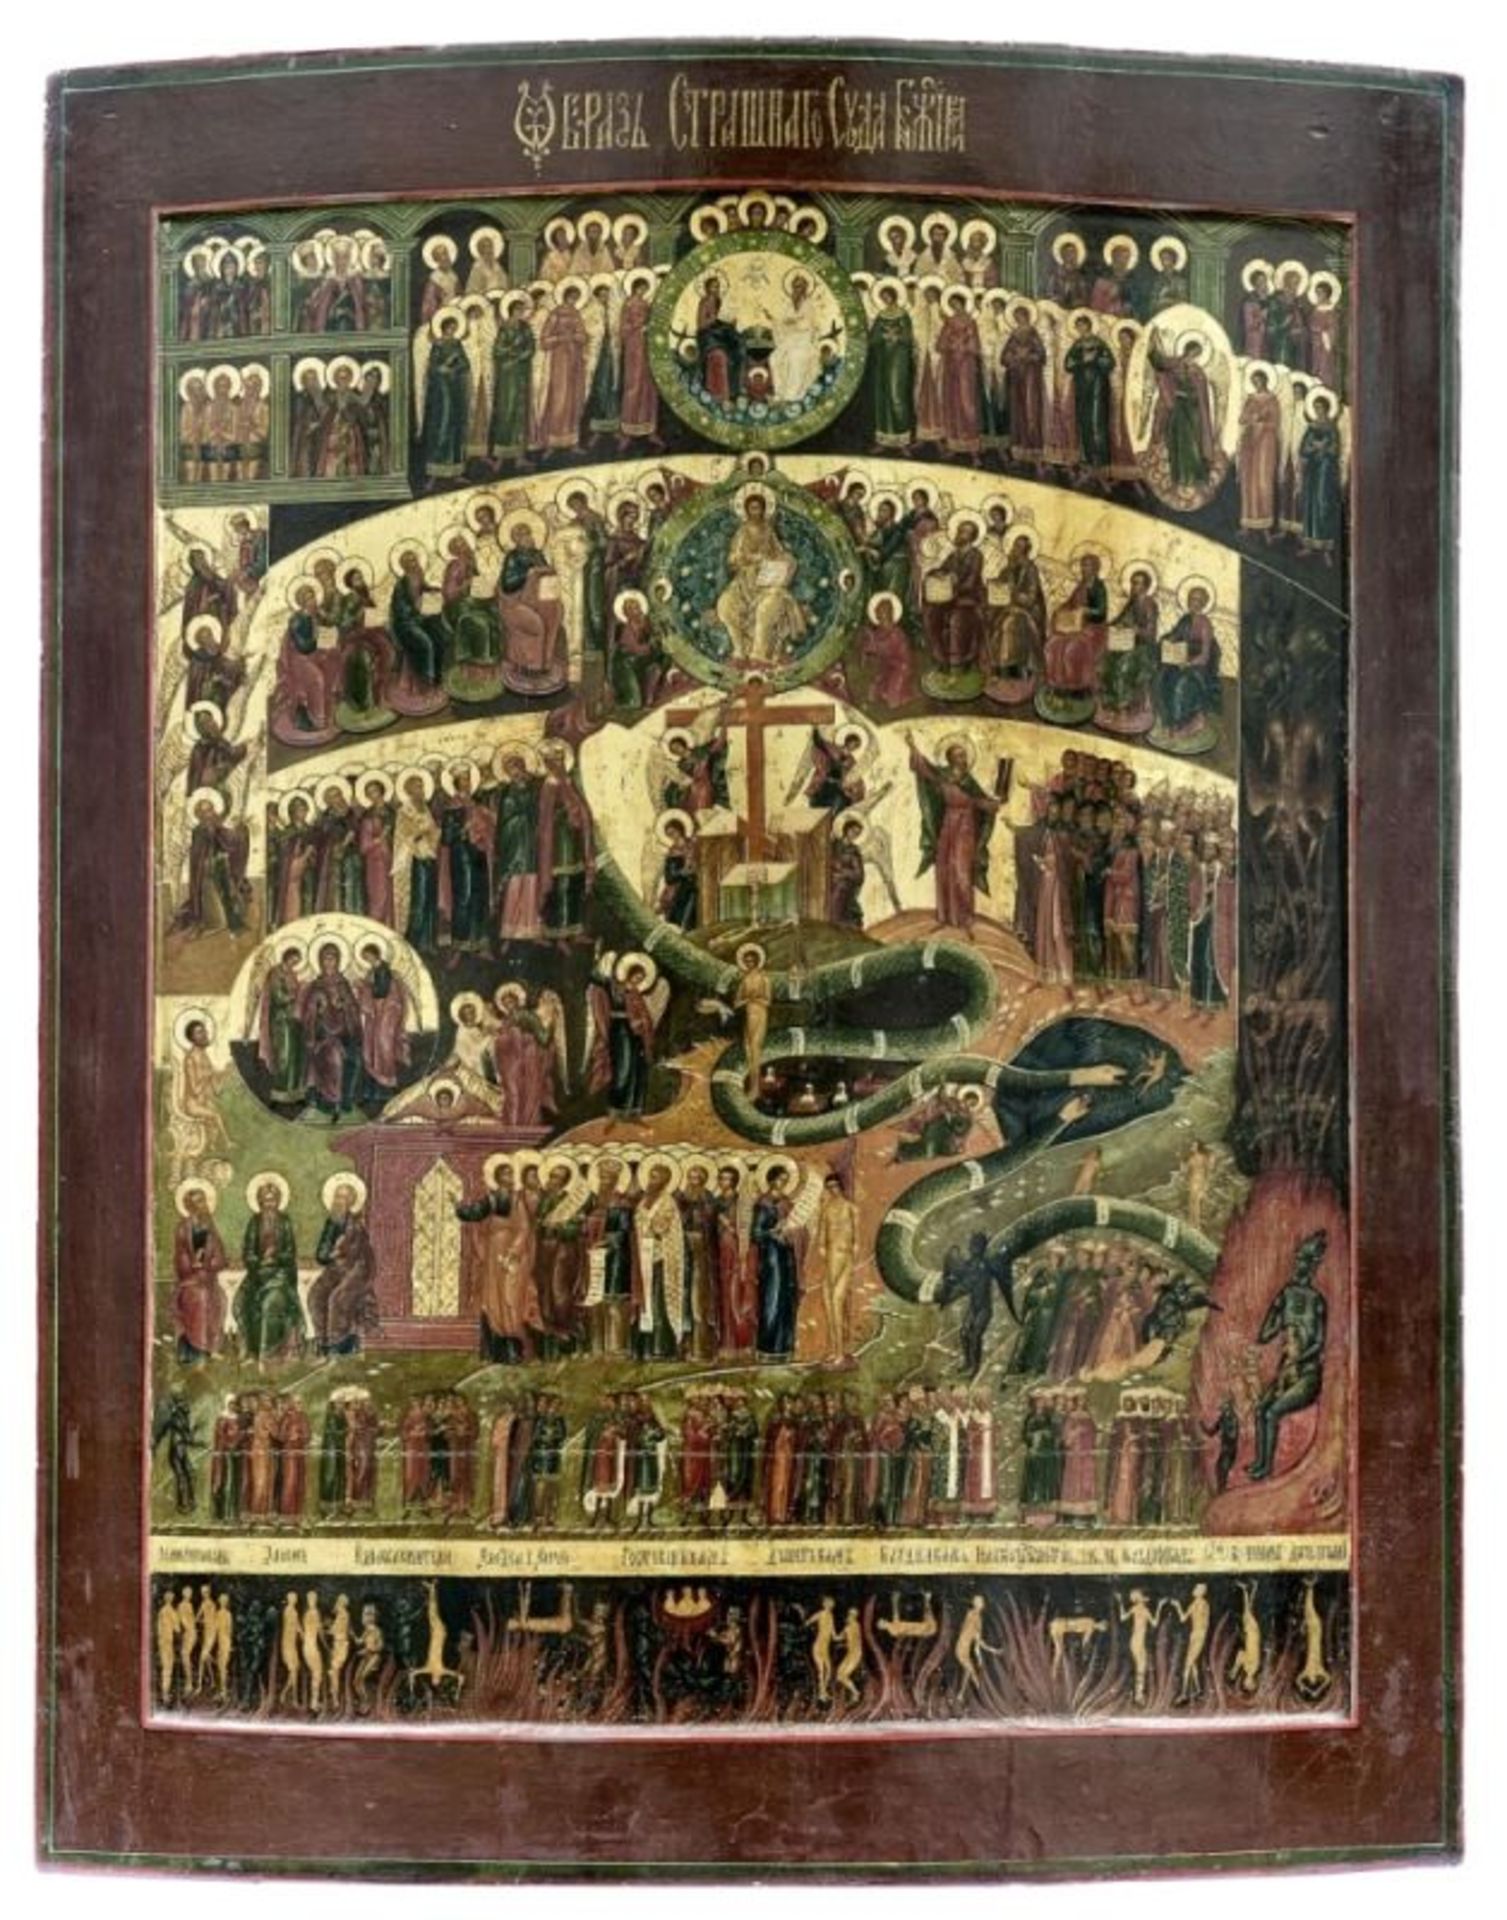 Große Ikone mit dem Jüngsten Gericht, Russland, Mstjora - 2. H. 19. Jh.